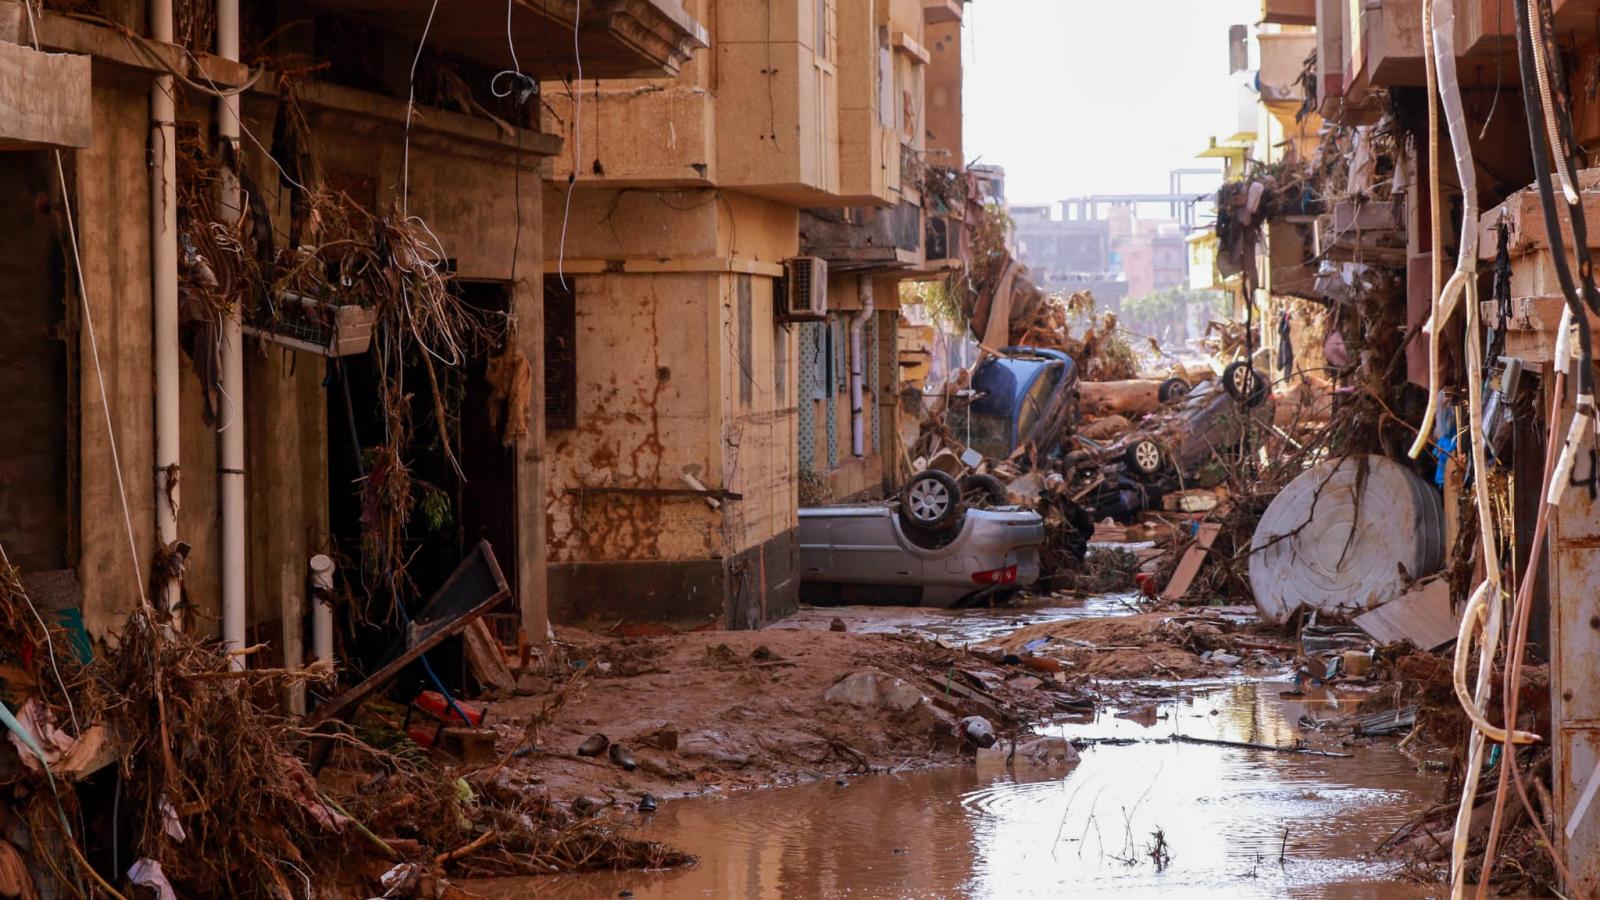 Les inondations en Libye font au moins 11300 morts à Derna, déclare l'ONU